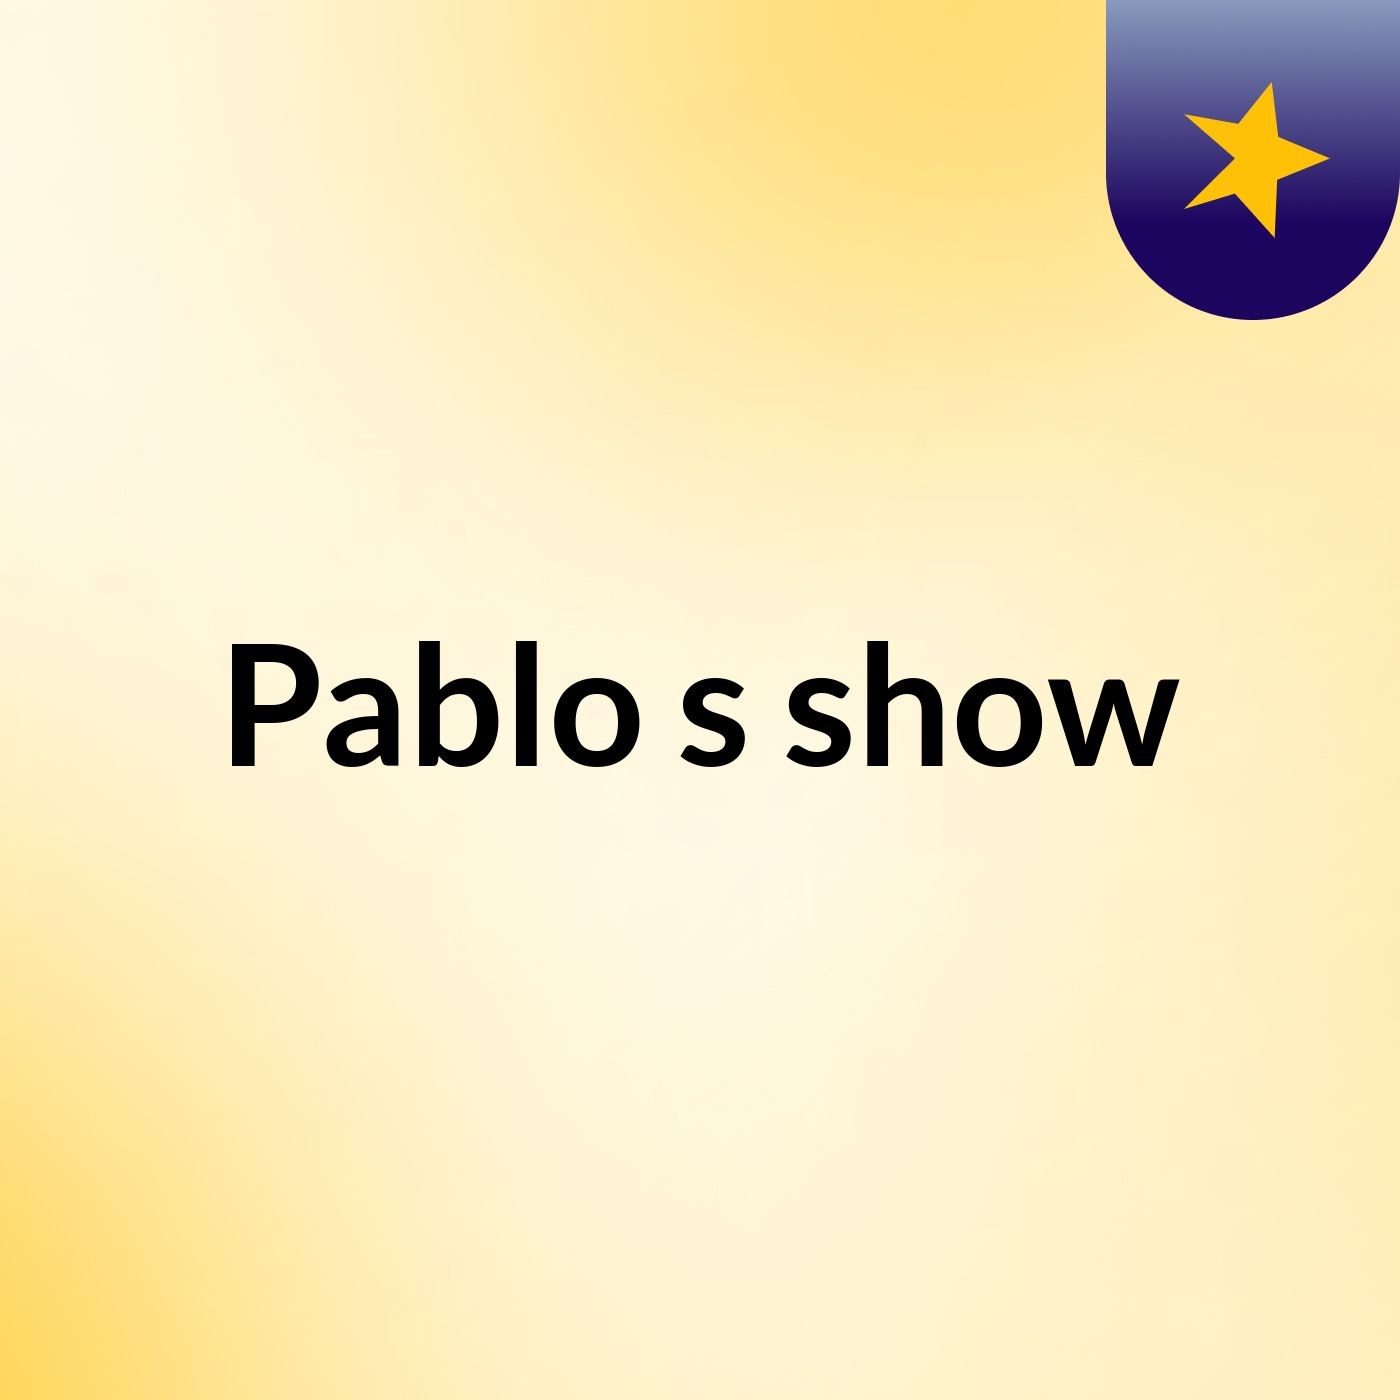 Pablo's show